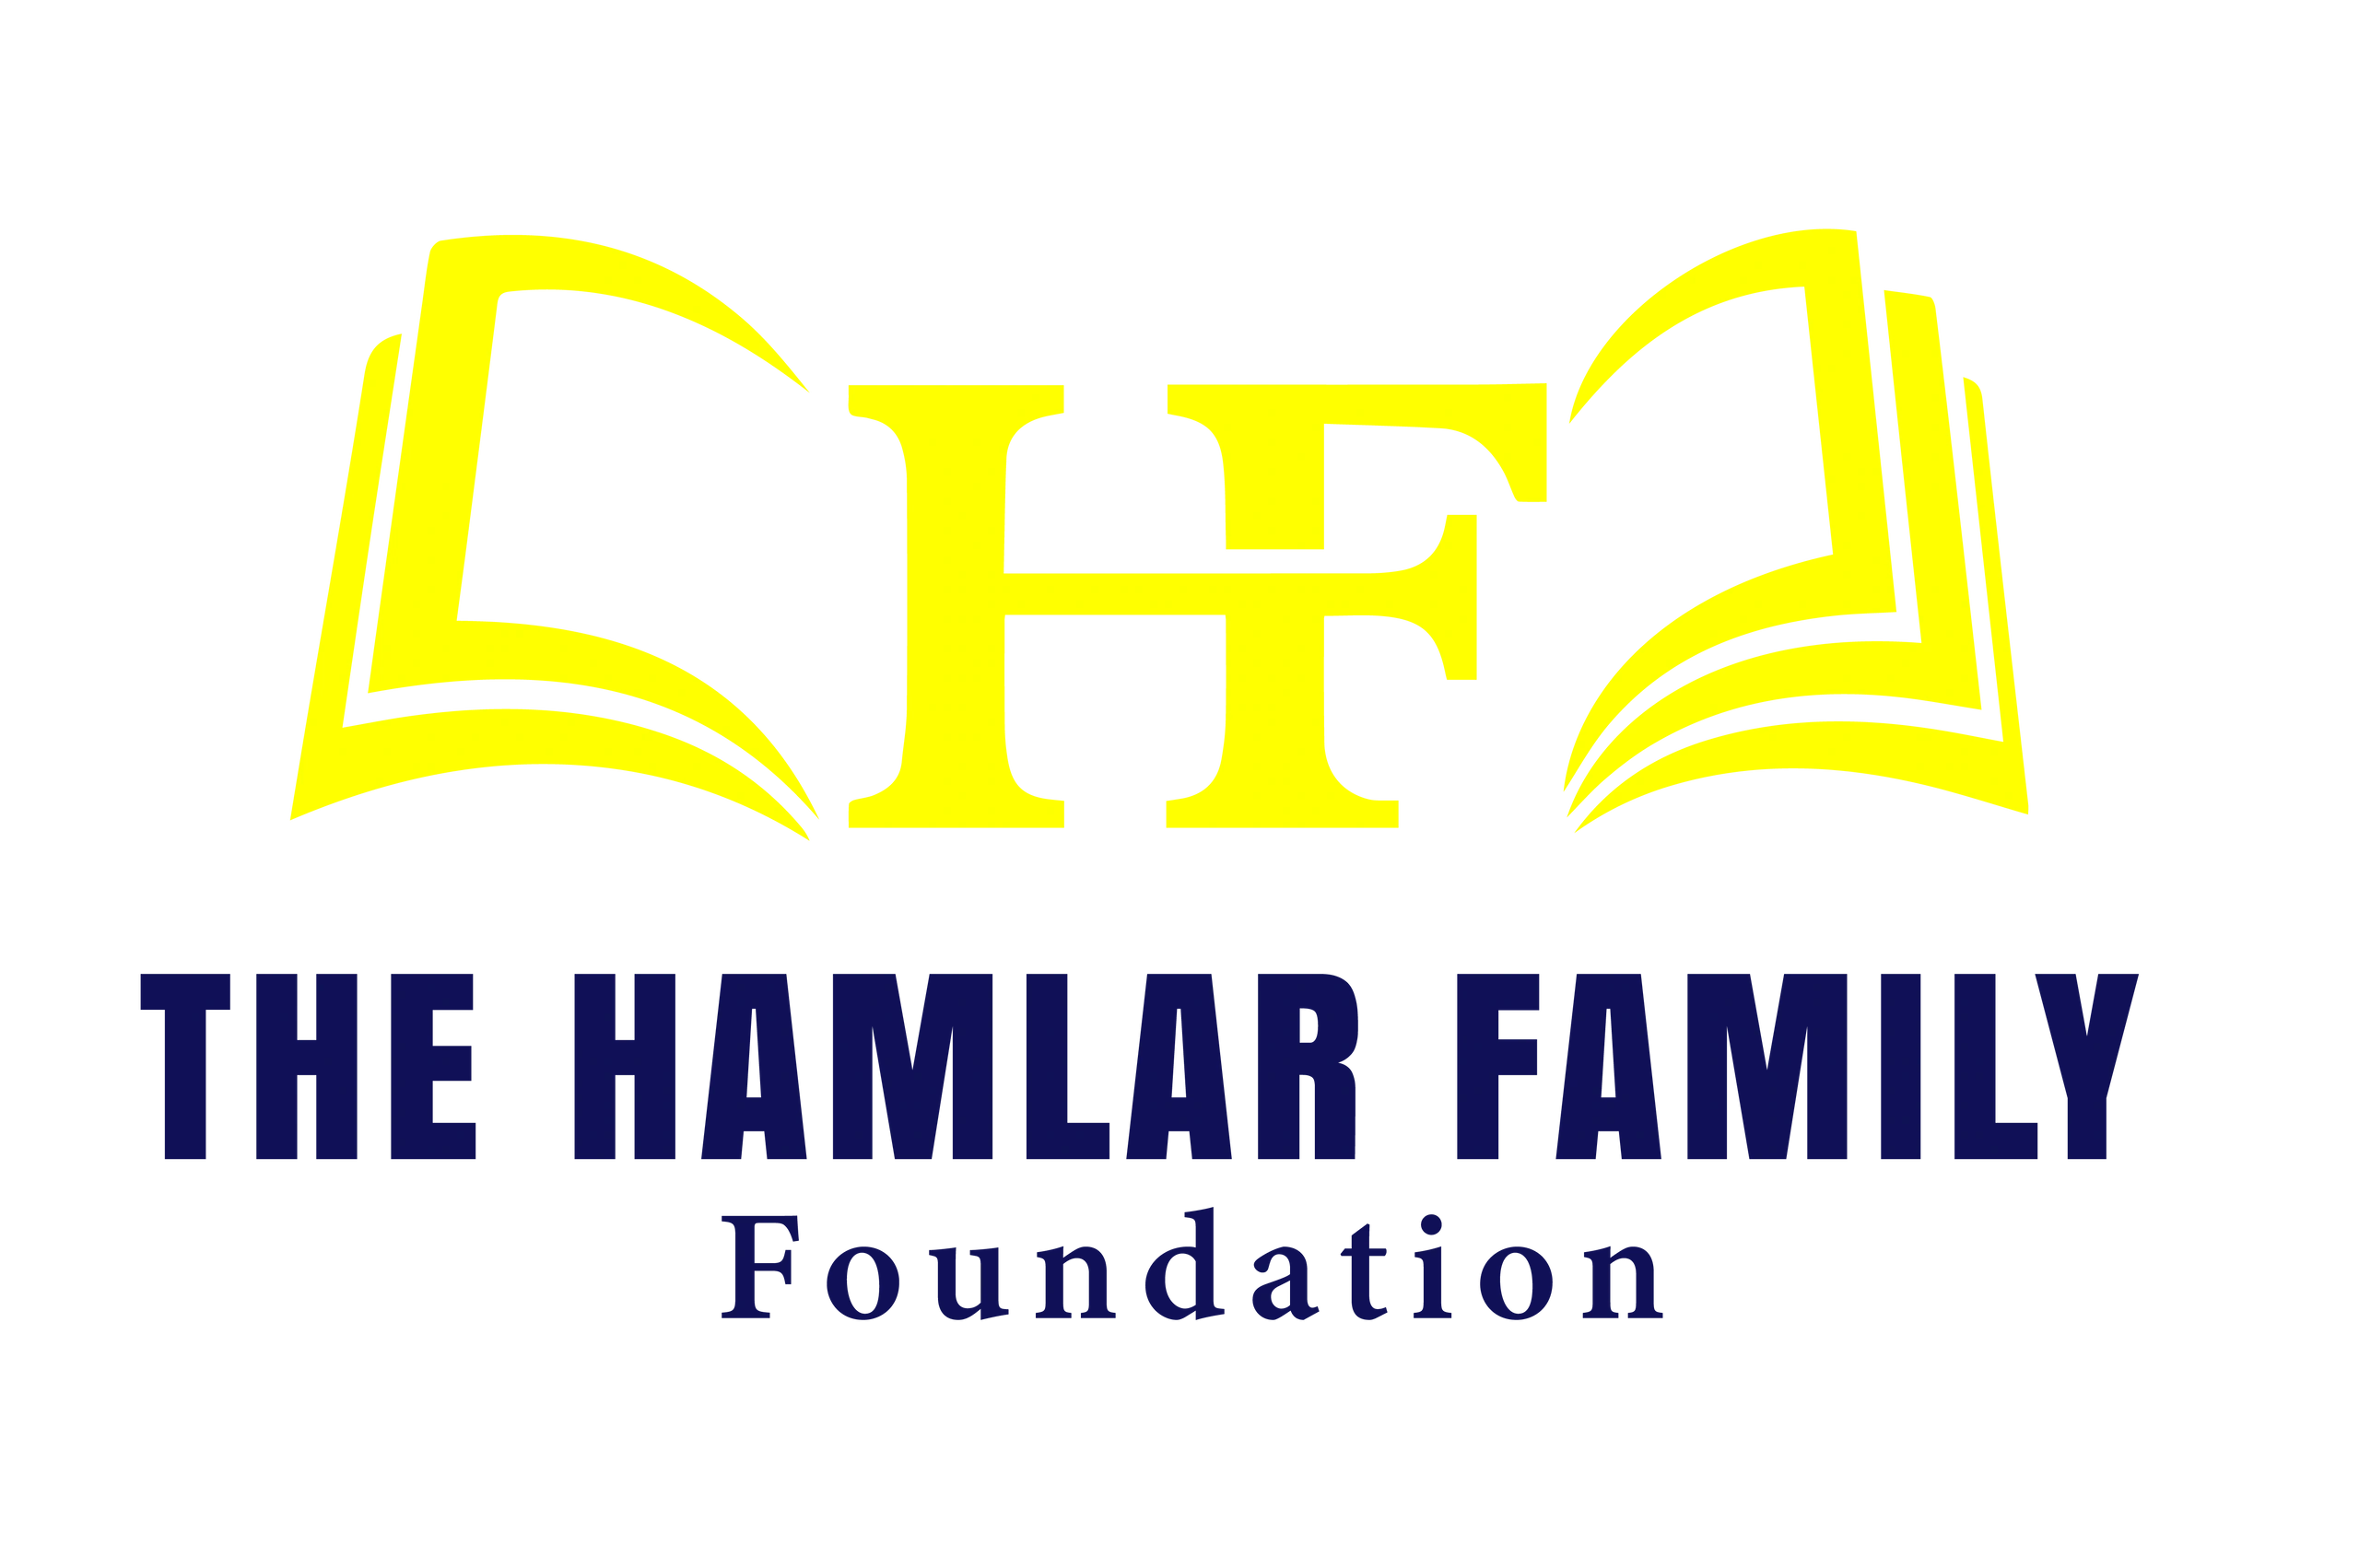 Hamlar Family Foundation